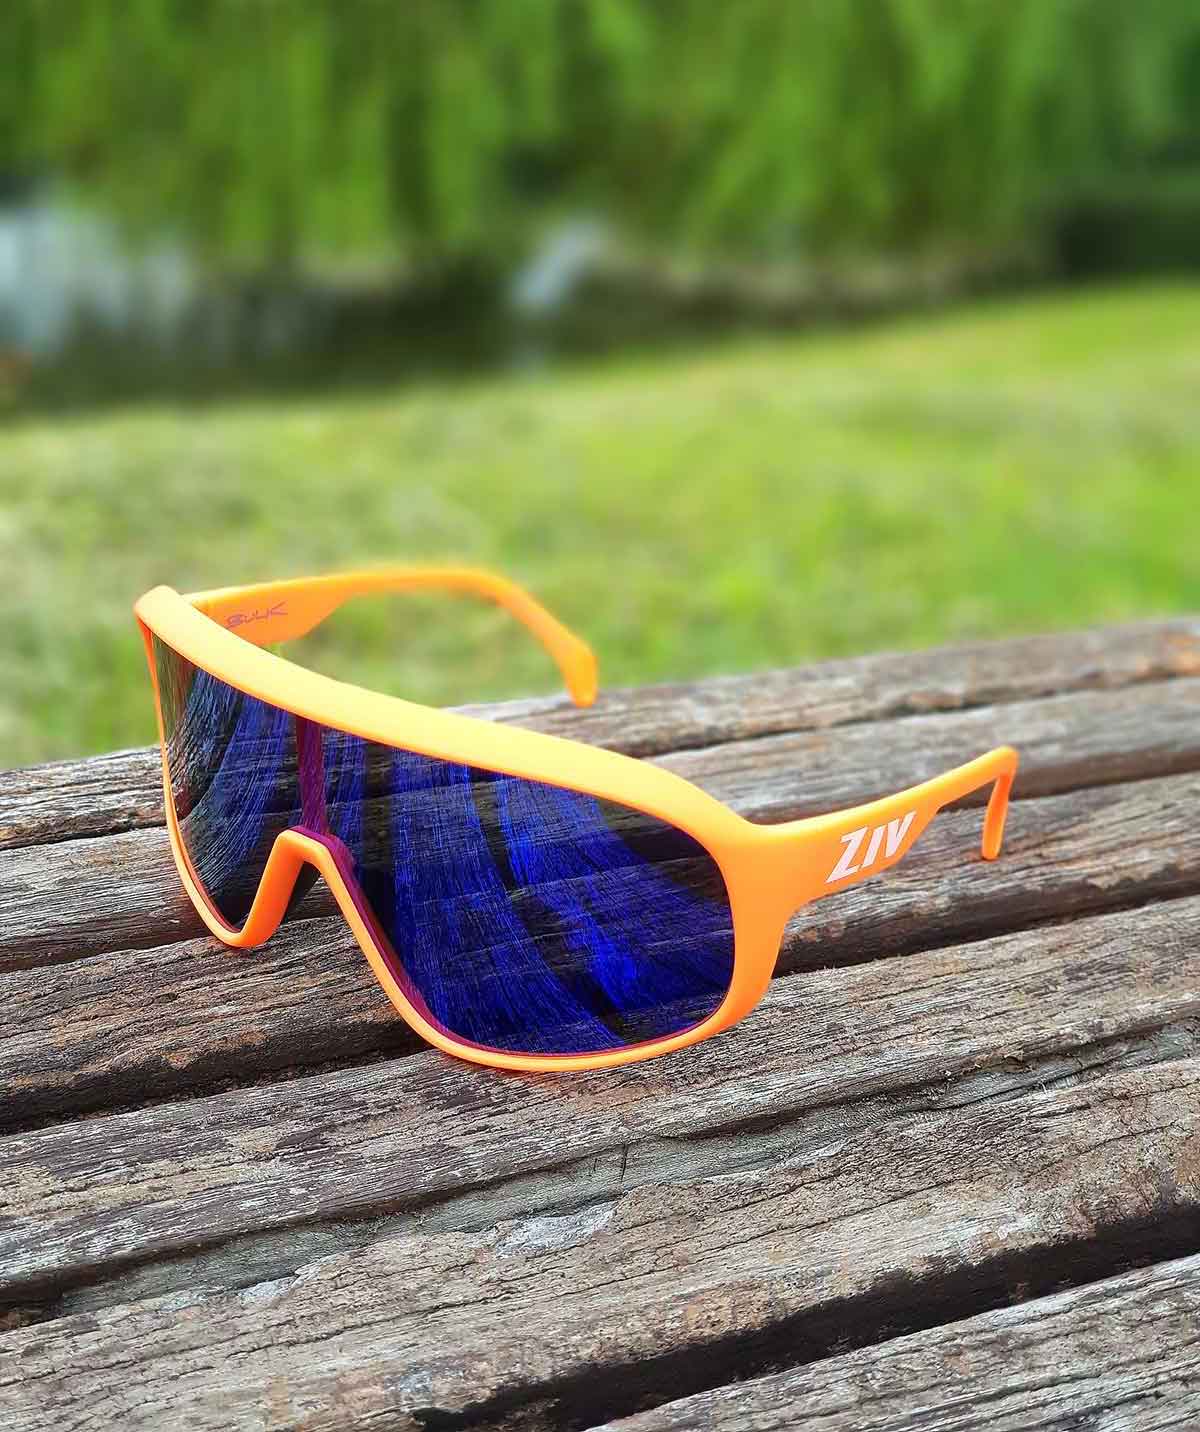 BULK系列編號125的霧螢光橘框運動眼鏡